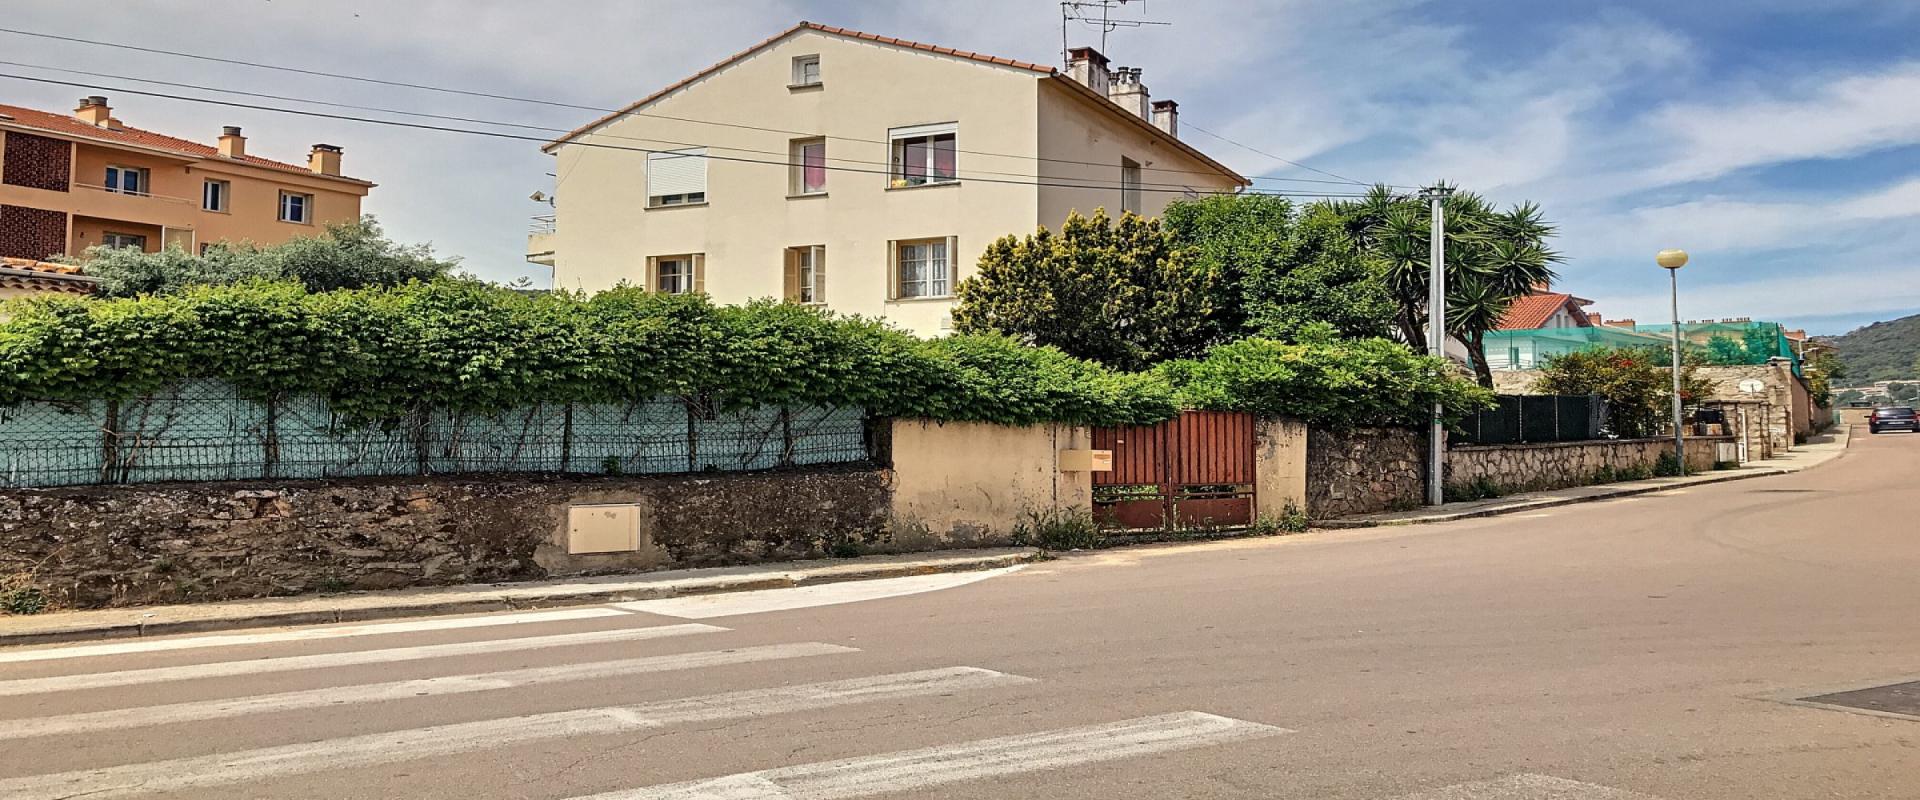 En Corse, à Ajaccio, un appartement de type F4 de 87 m² secteur du Loretto